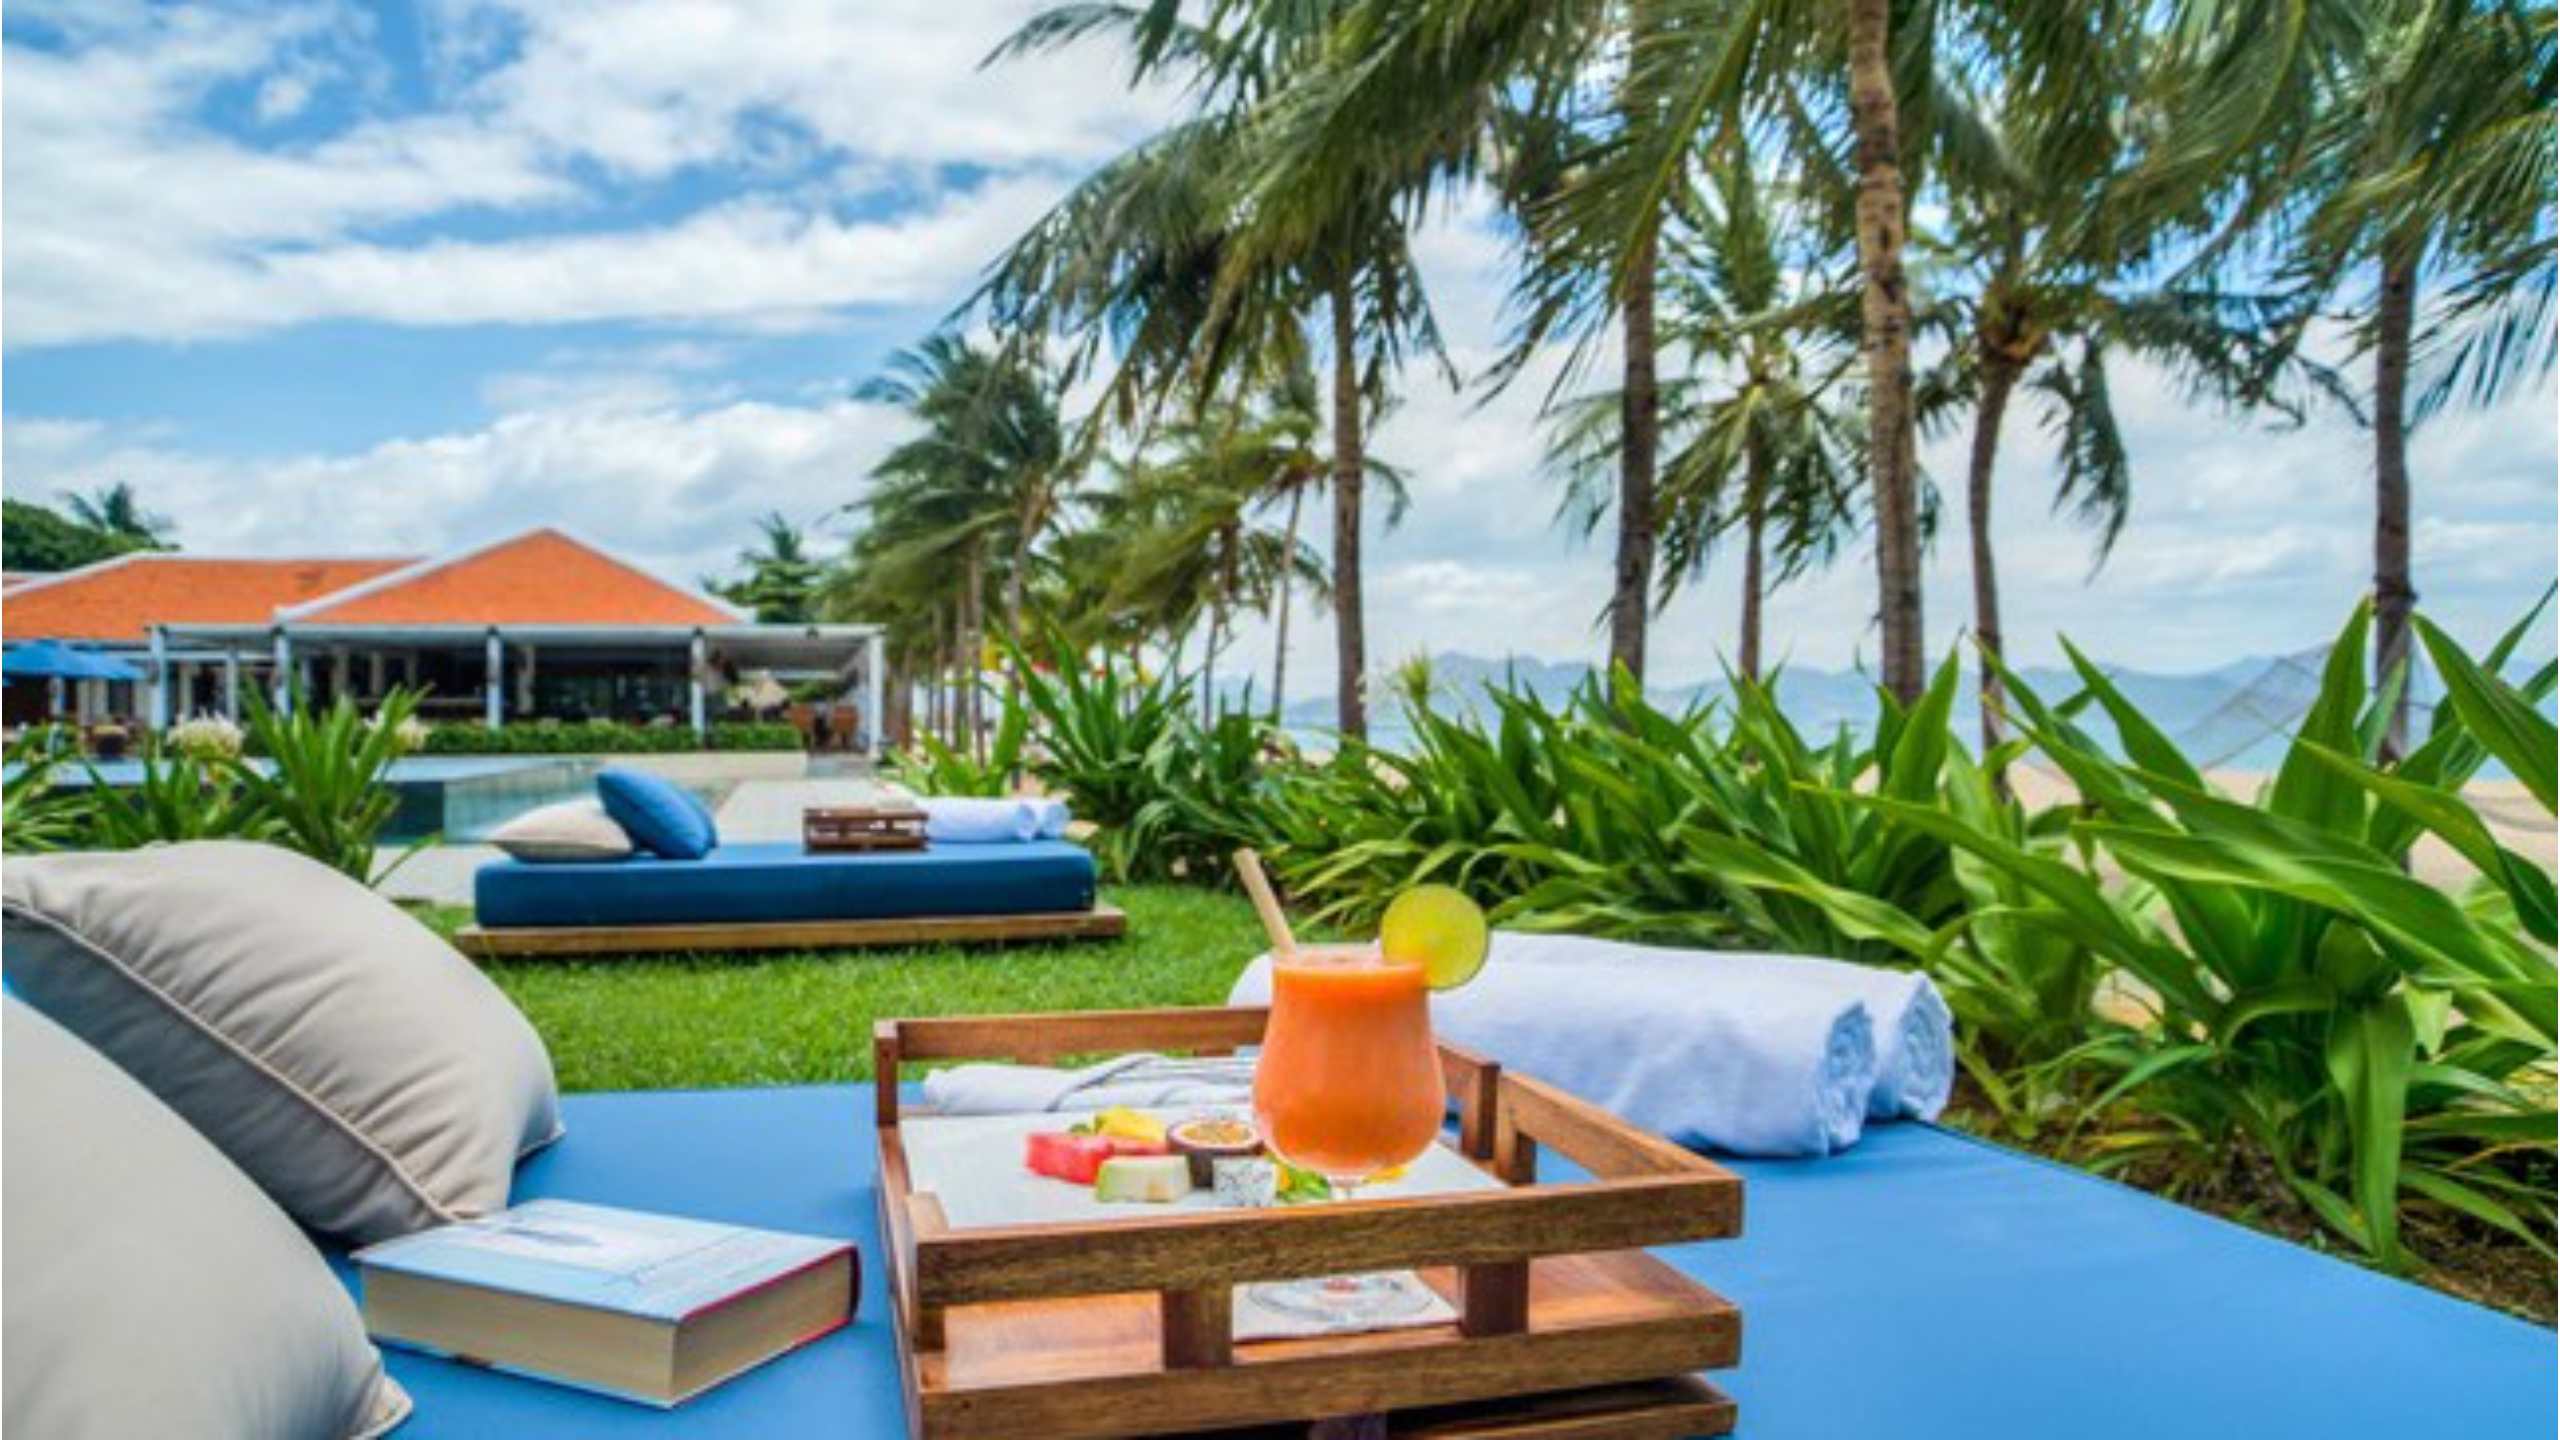 evason-ana-mandara-nha-trang-vietnam-beach-lounge-beds-beachrfont-luxury-resort